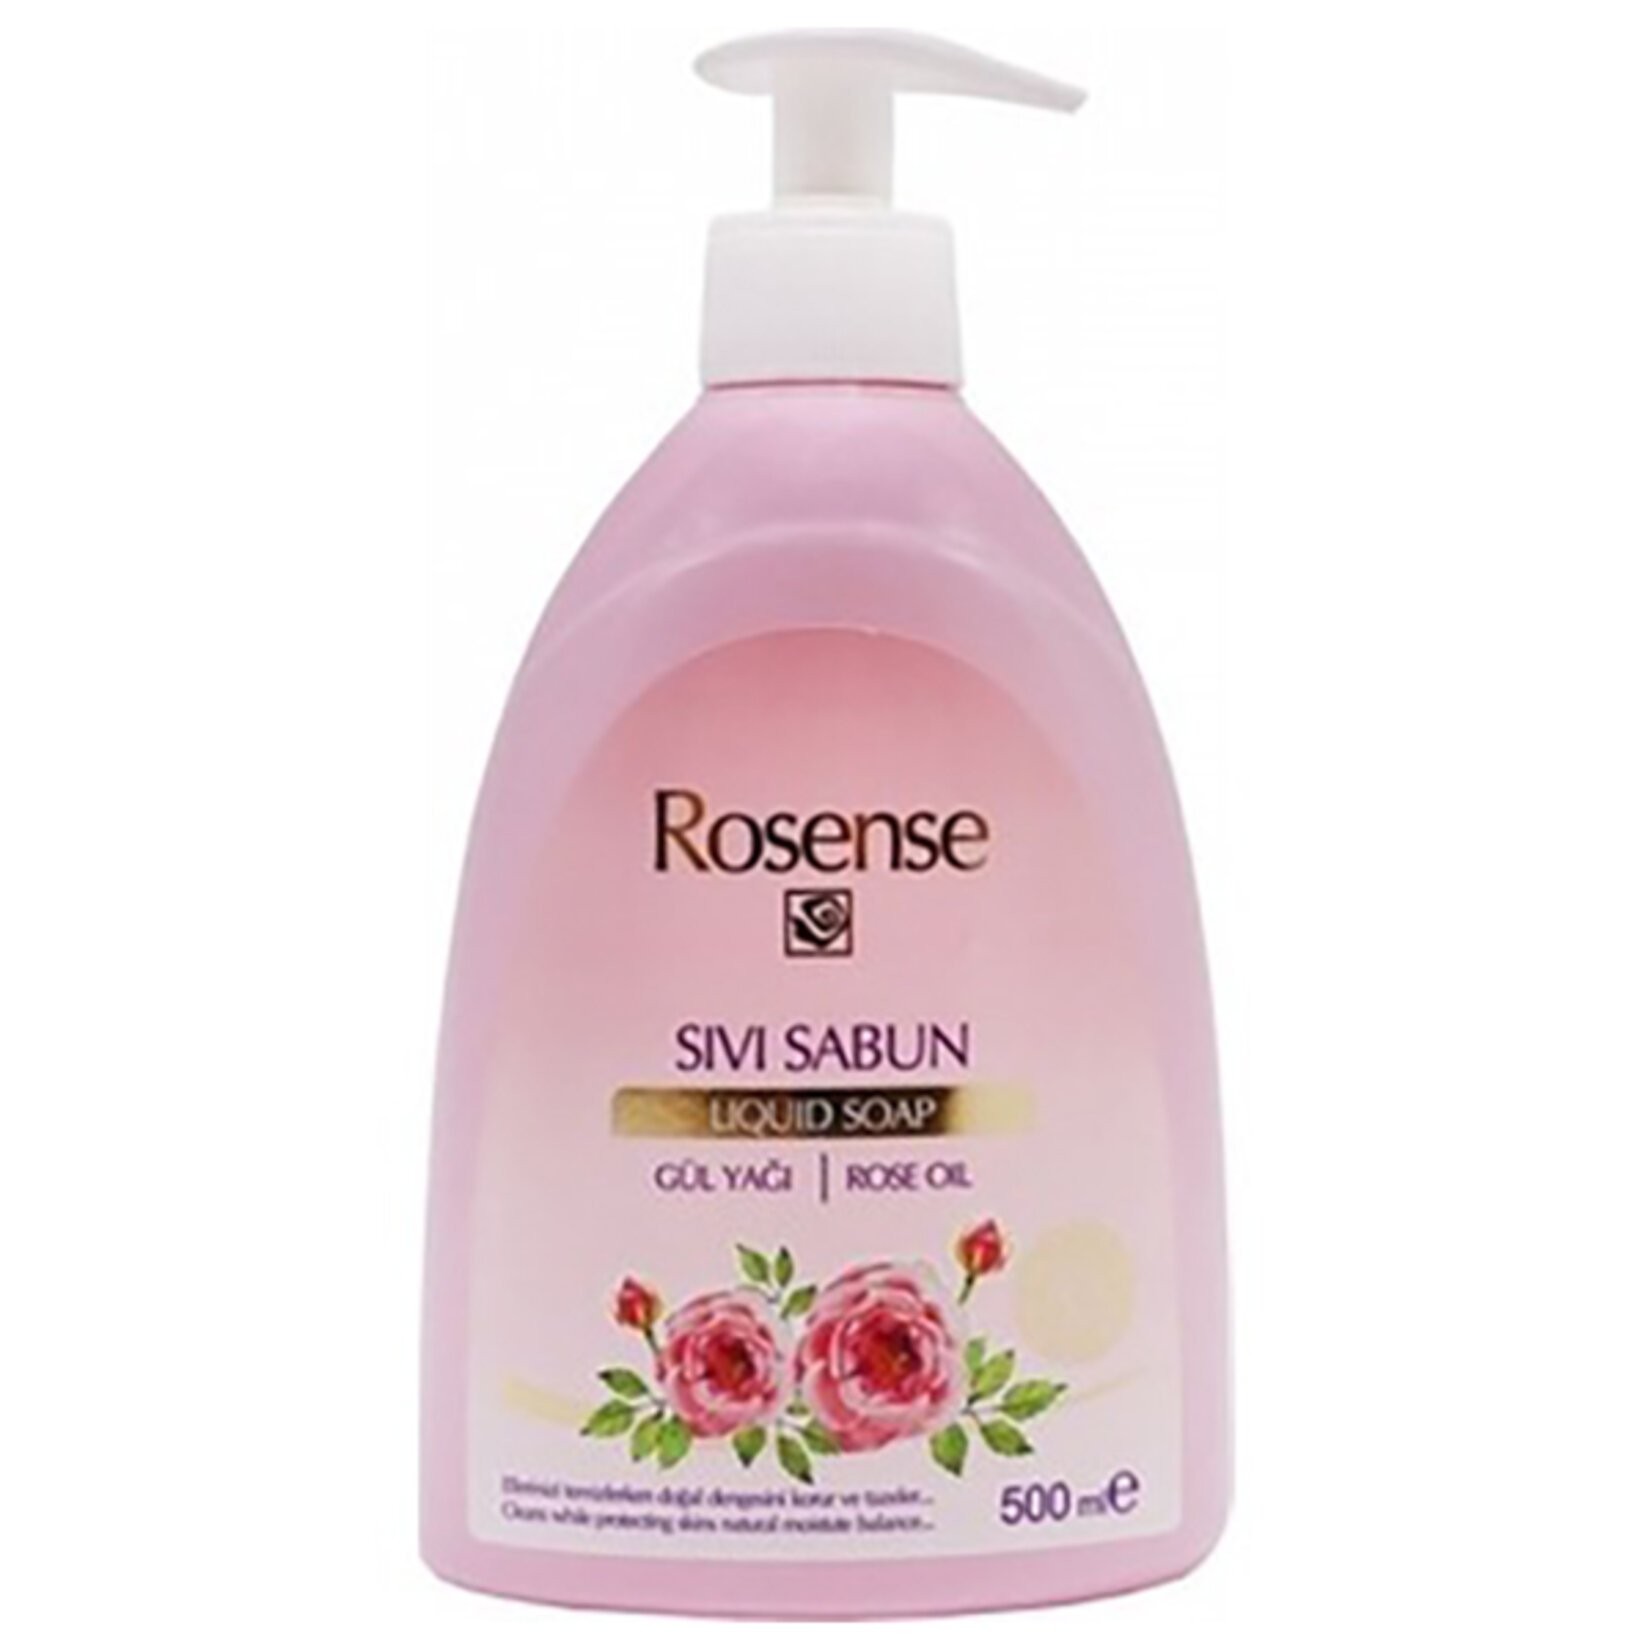 Rosense Sıvı Sabun 500 ml.